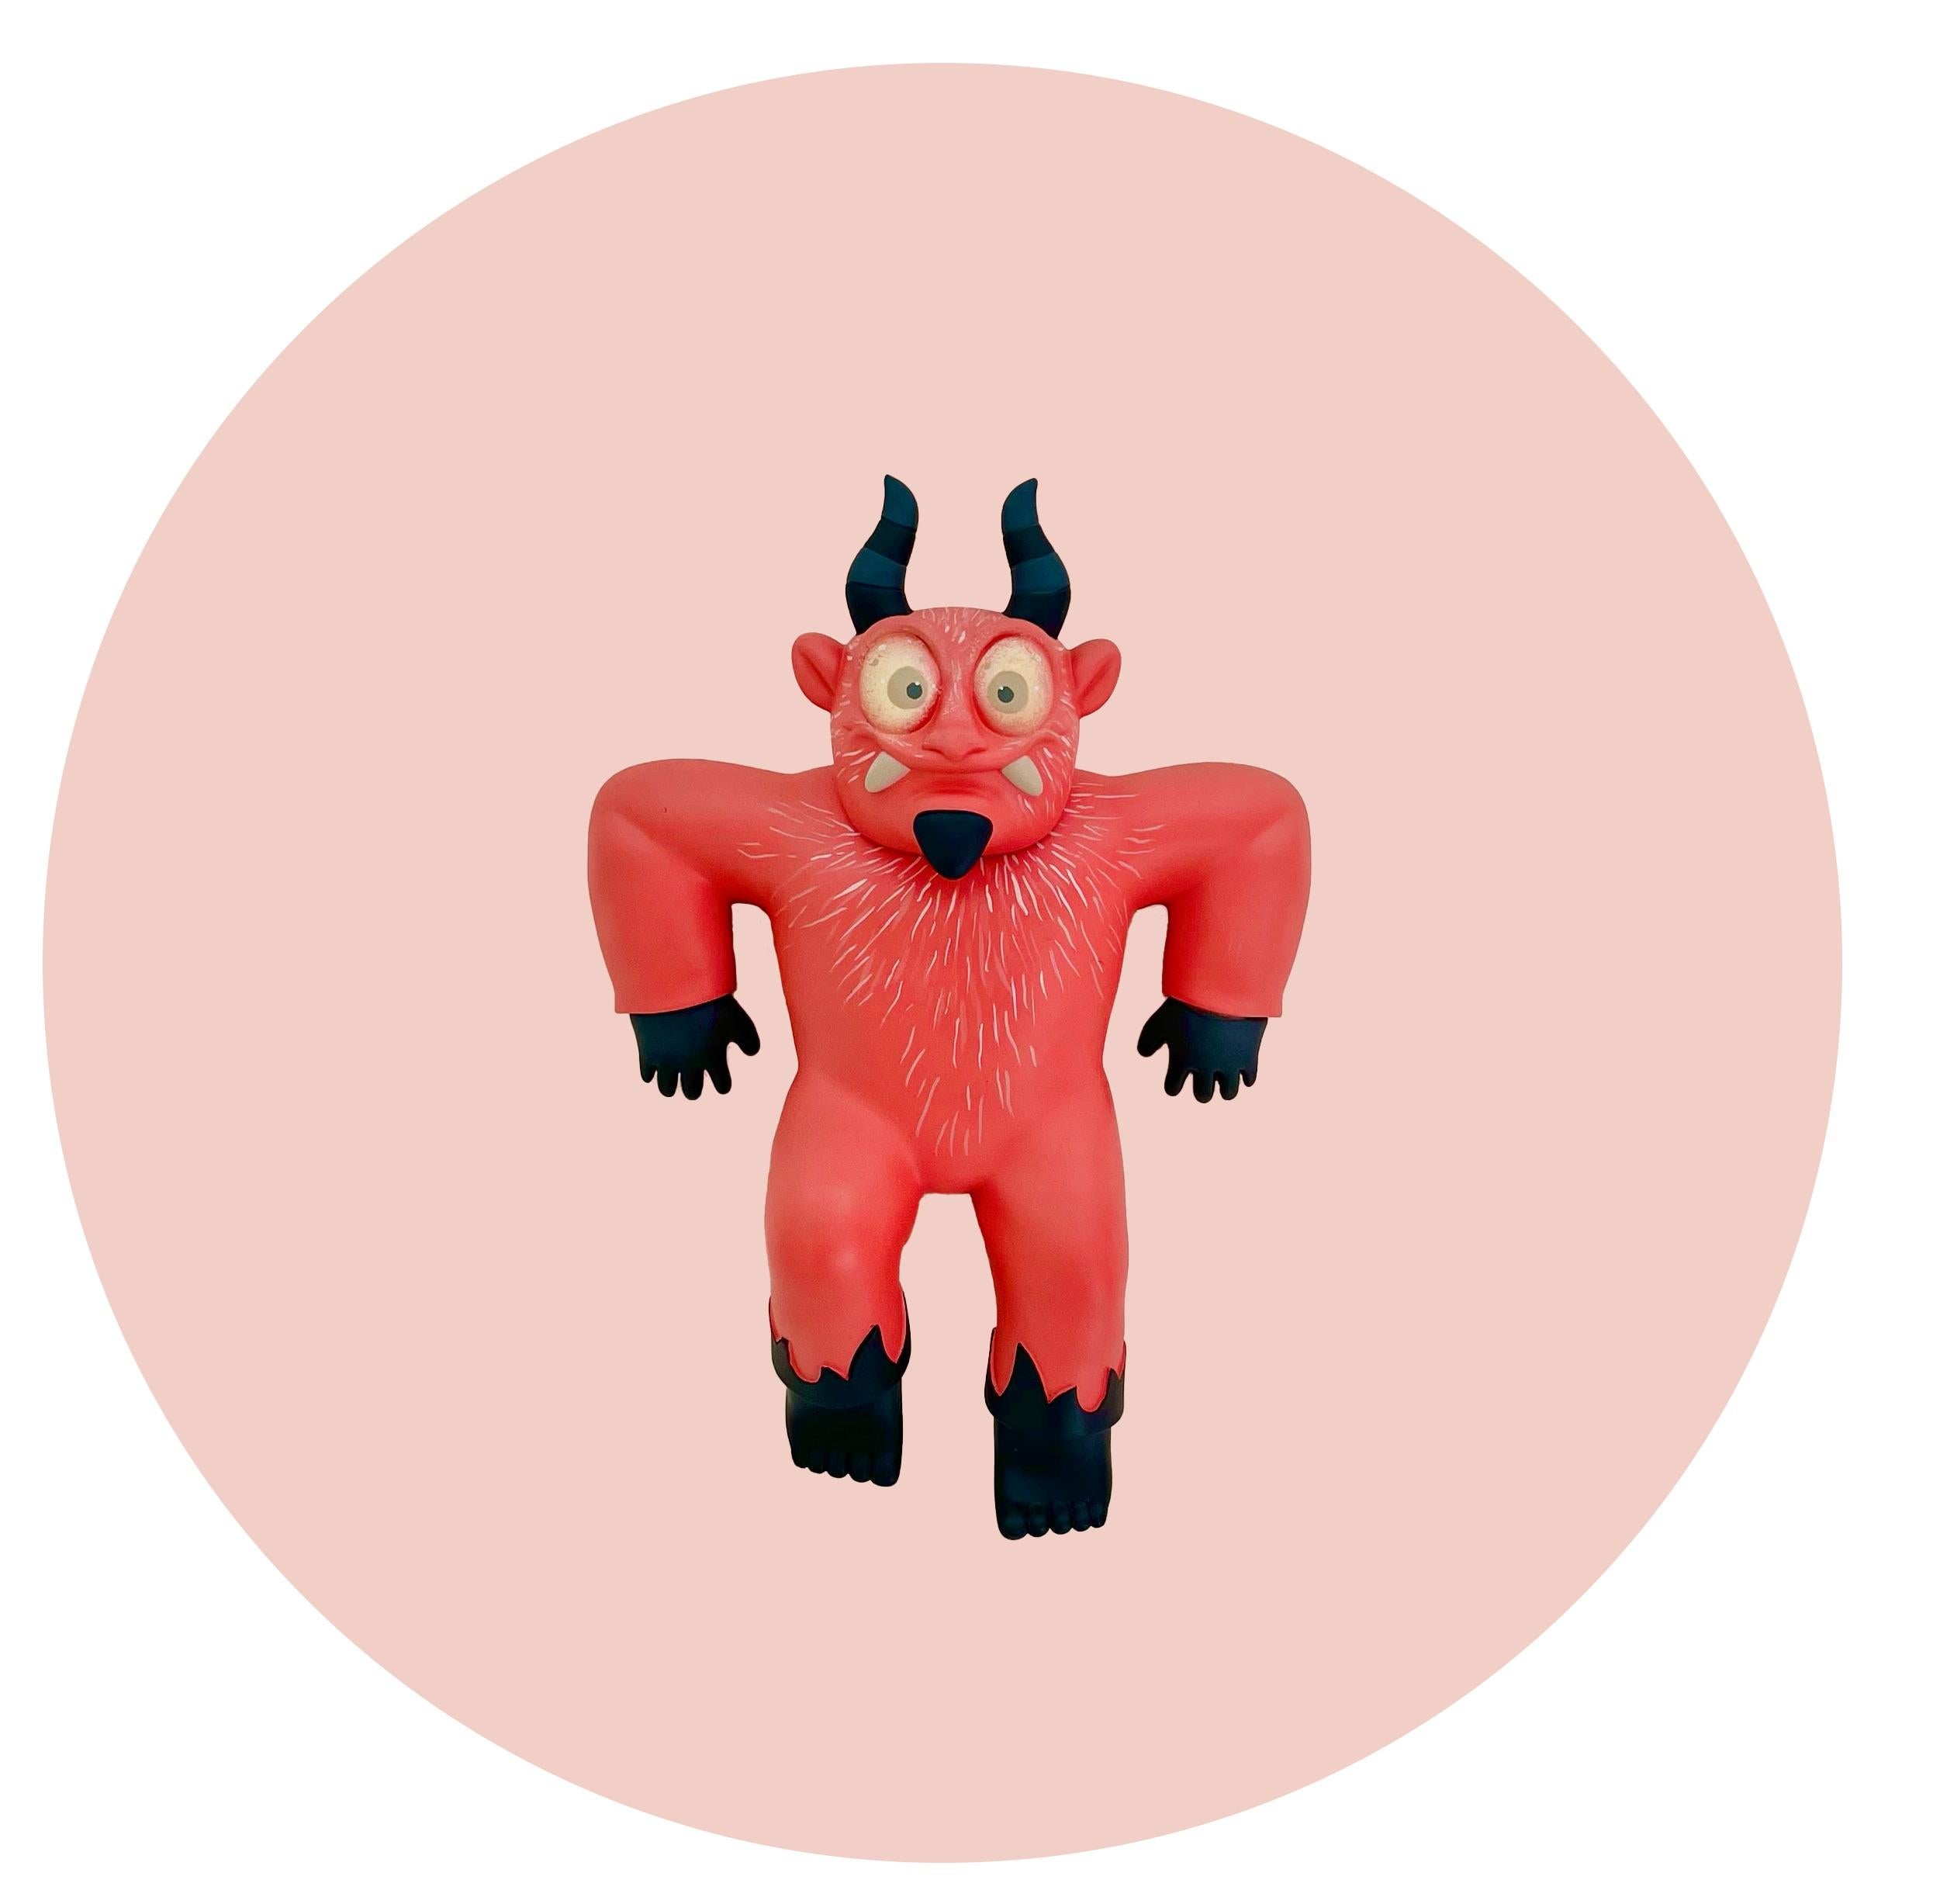 Mr. Mitote Figurative Sculpture - "Diablito colgando" art toy, red devil, pop art, Mexican, contempo, sculpture